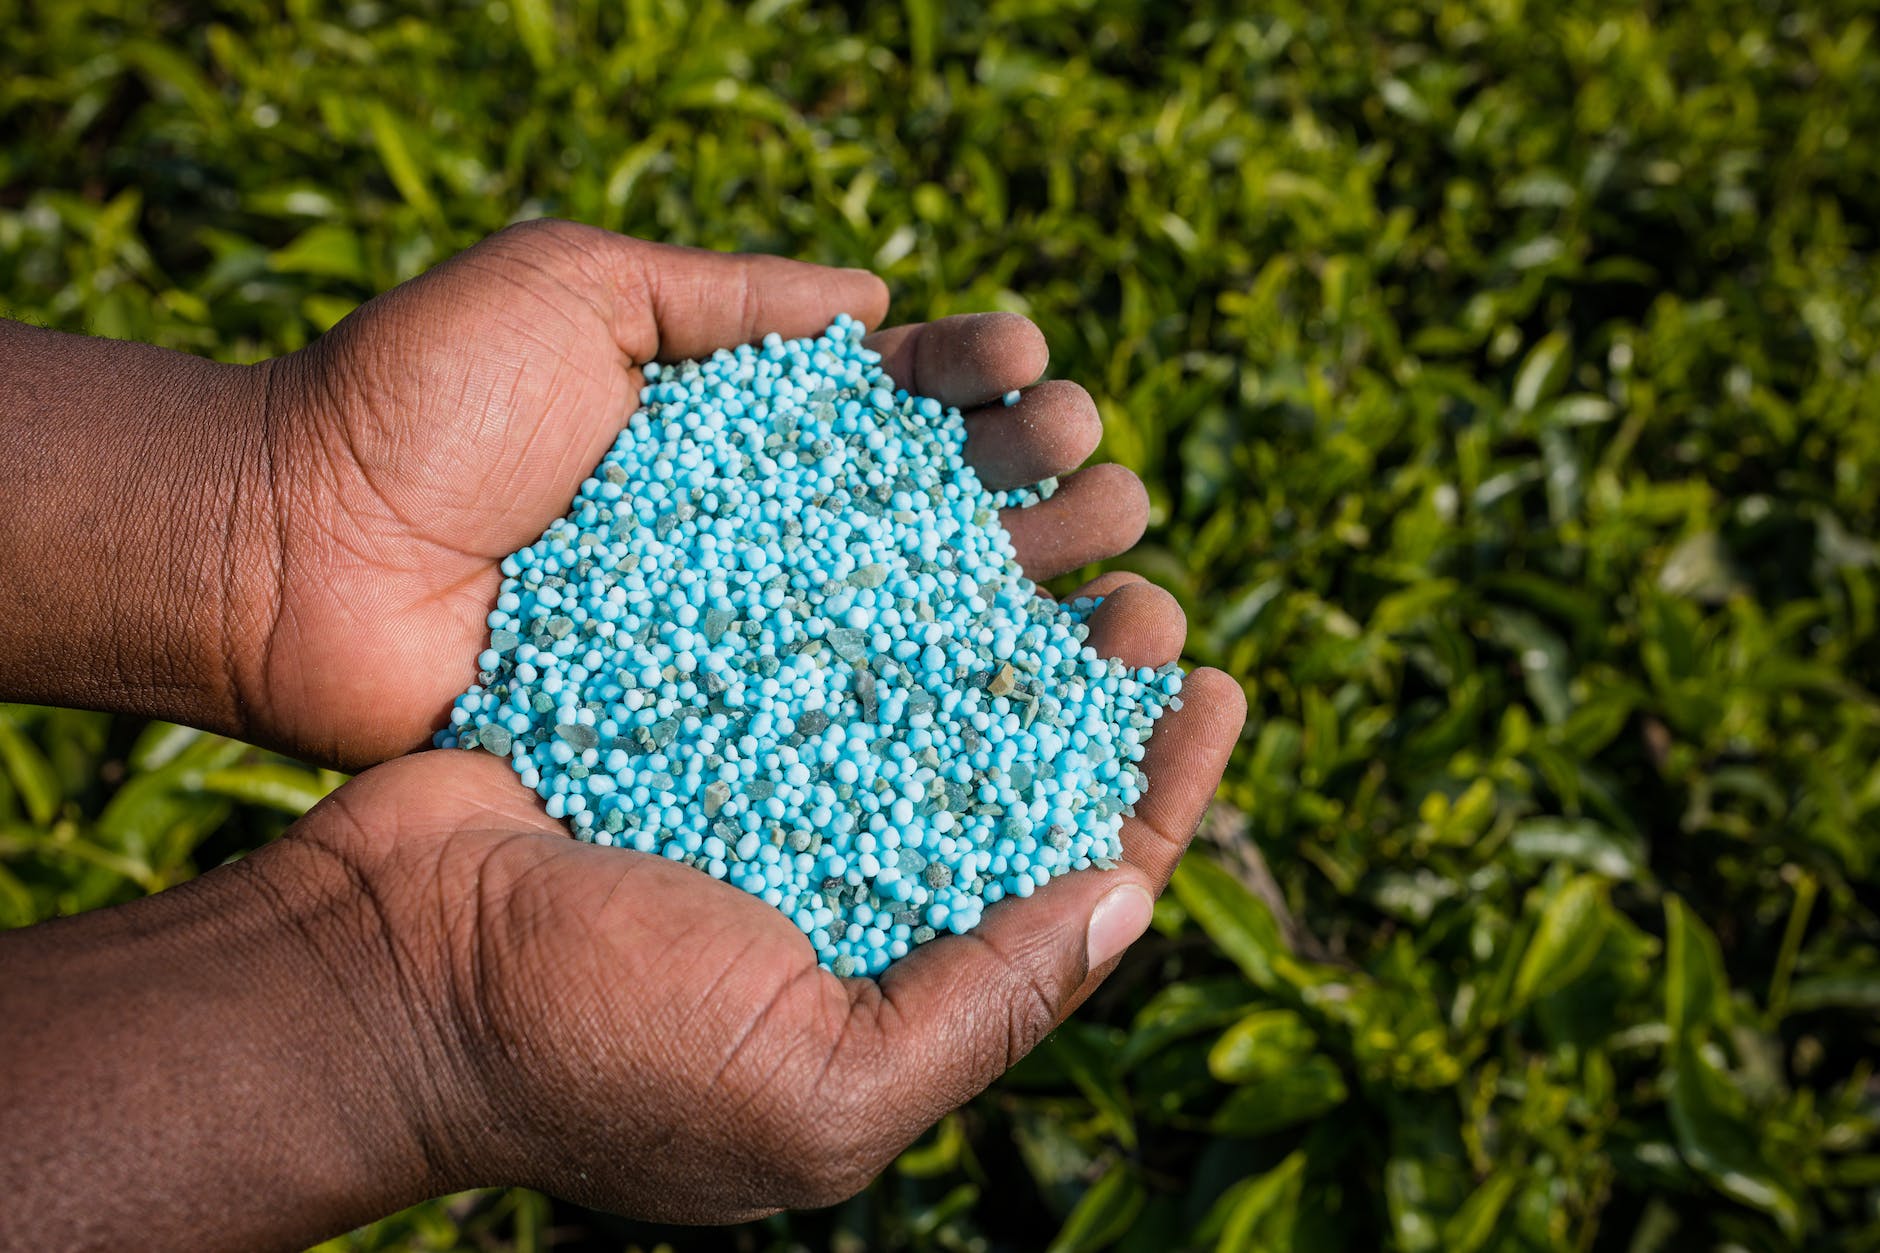 hands holding blue granulated fertilizer